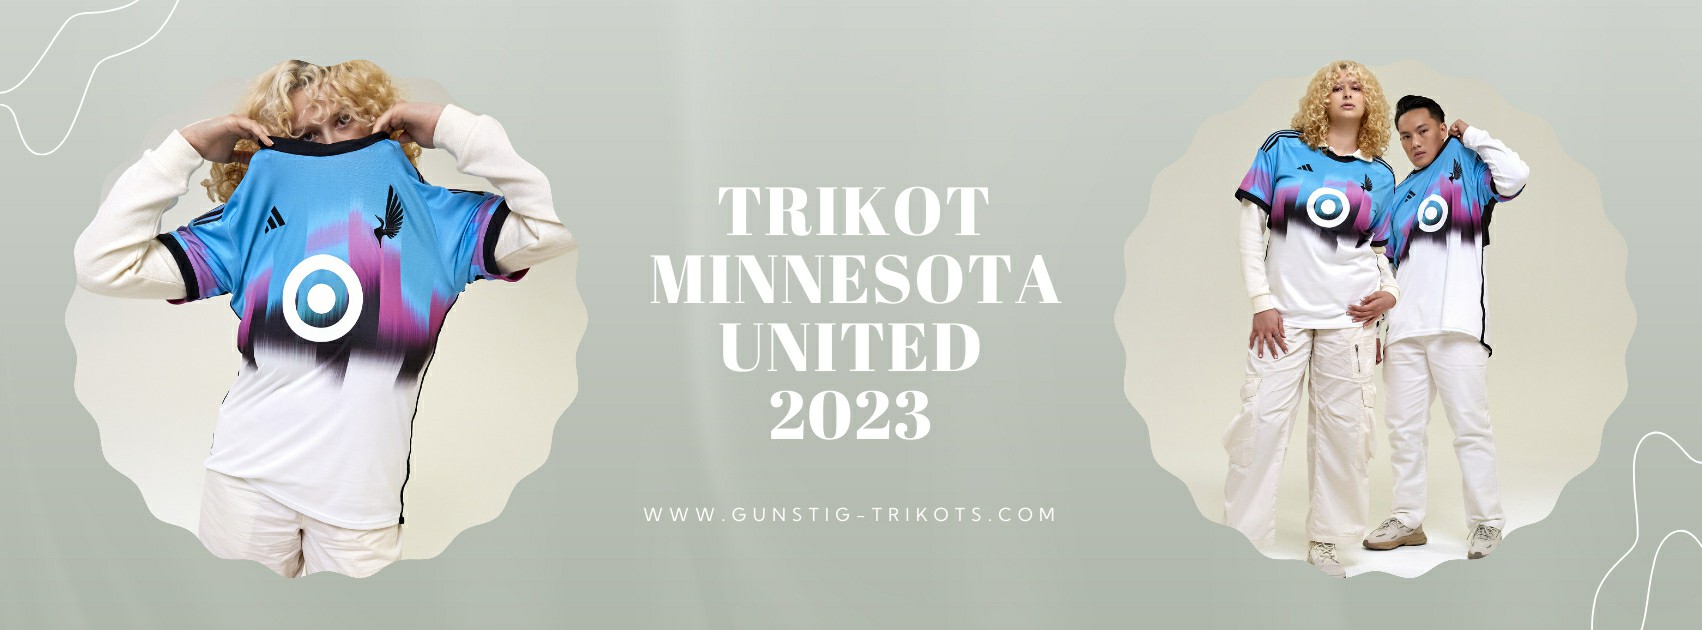 Minnesota United Trikot 2023-2024